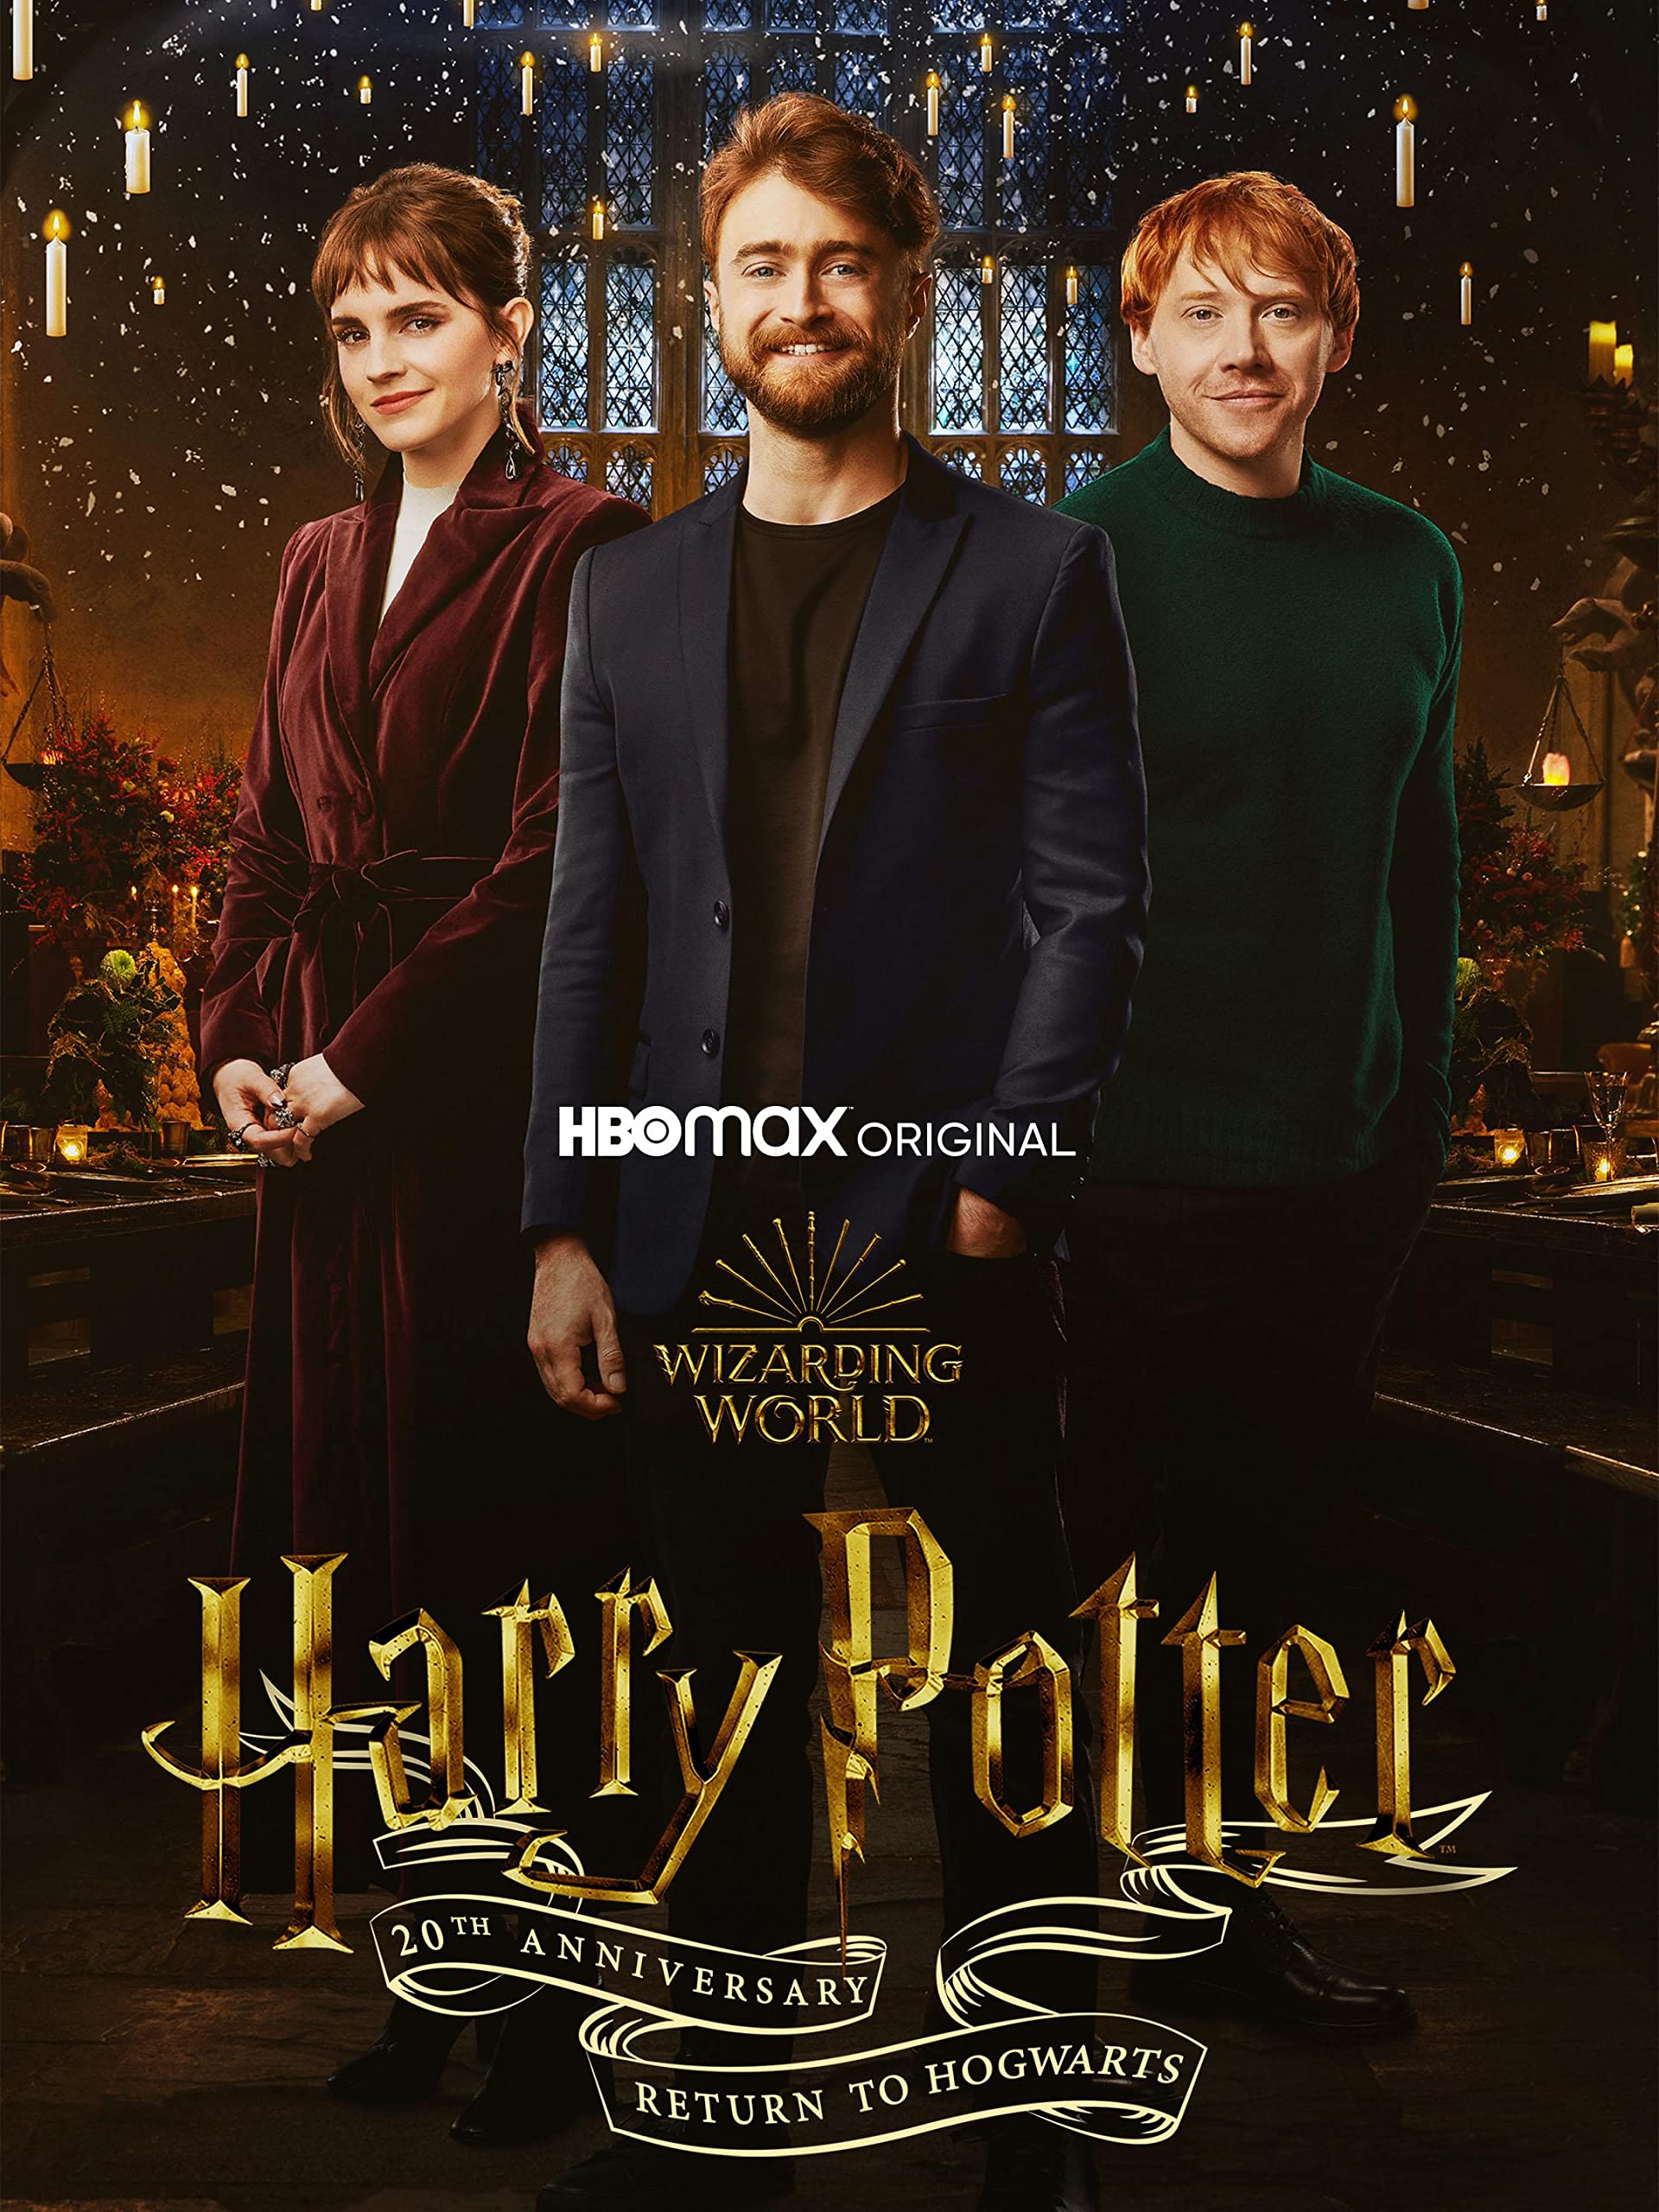 مستند سالگرد پاتر:بازگشت به هاگوارتز Harry Potter 20th Anniversary: Return to Hogwarts